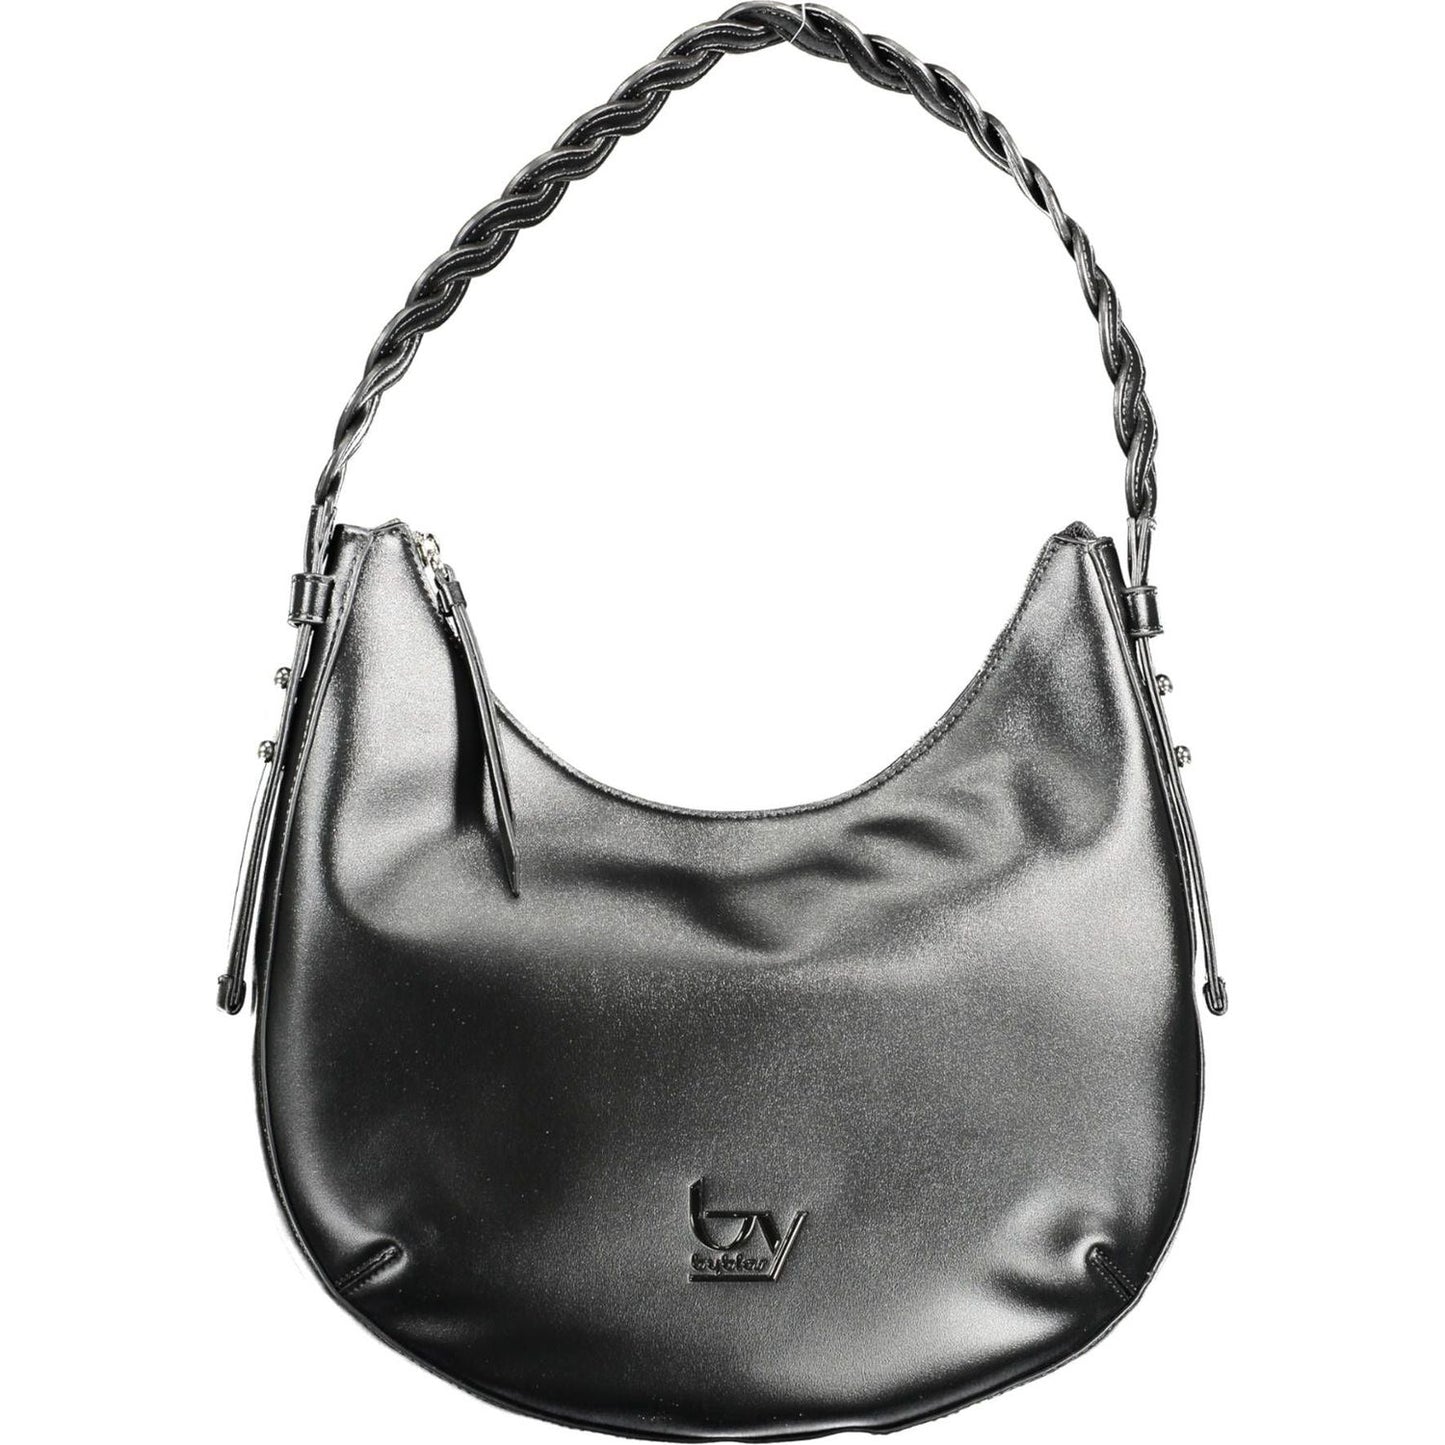 BYBLOS Chic Contrasting Detail Black Shoulder Bag chic-contrasting-detail-black-shoulder-bag